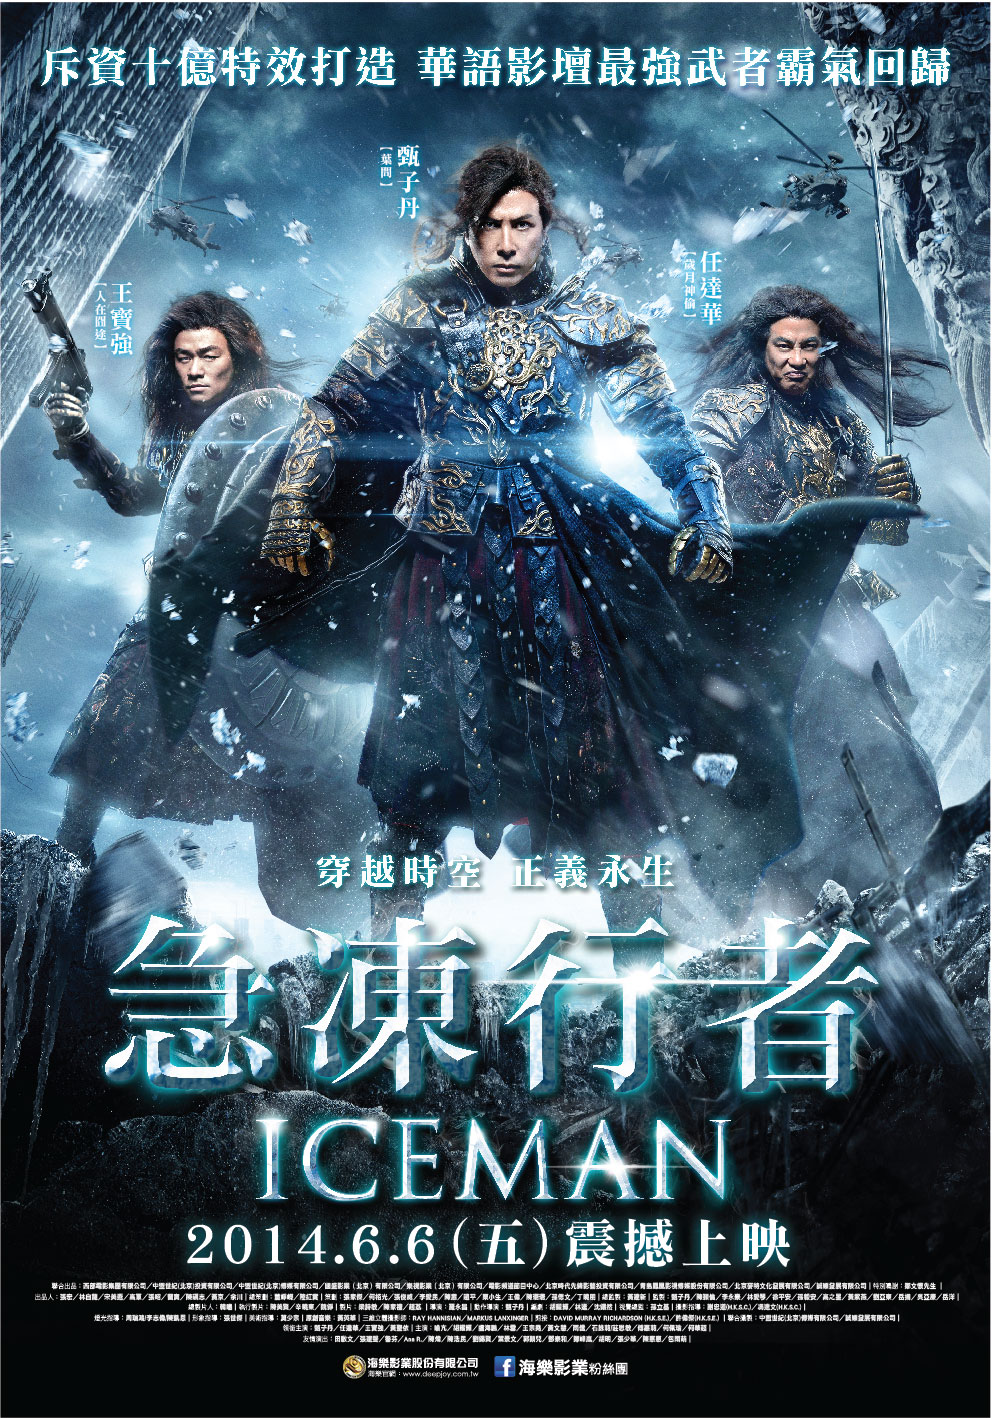 The Iceman - 冰封俠: 重生之門